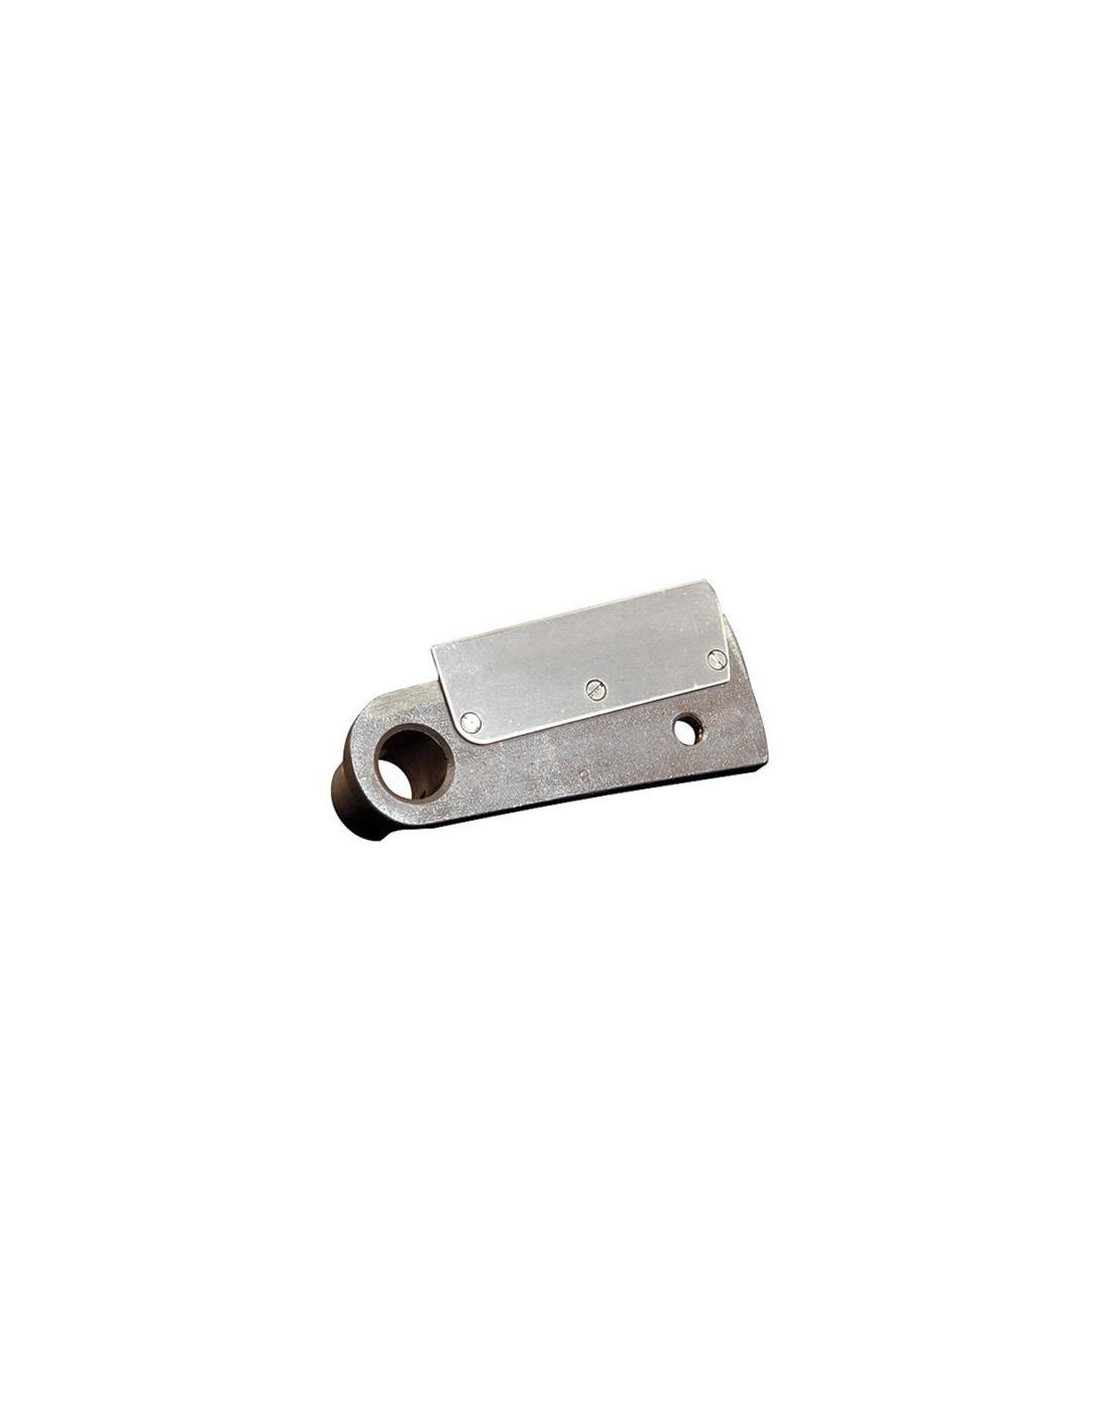 Coltello per dischi tagliamozzarella - per cubettare - Coltello Mod. P5 in acciaio inox - Spessore taglio mm 5